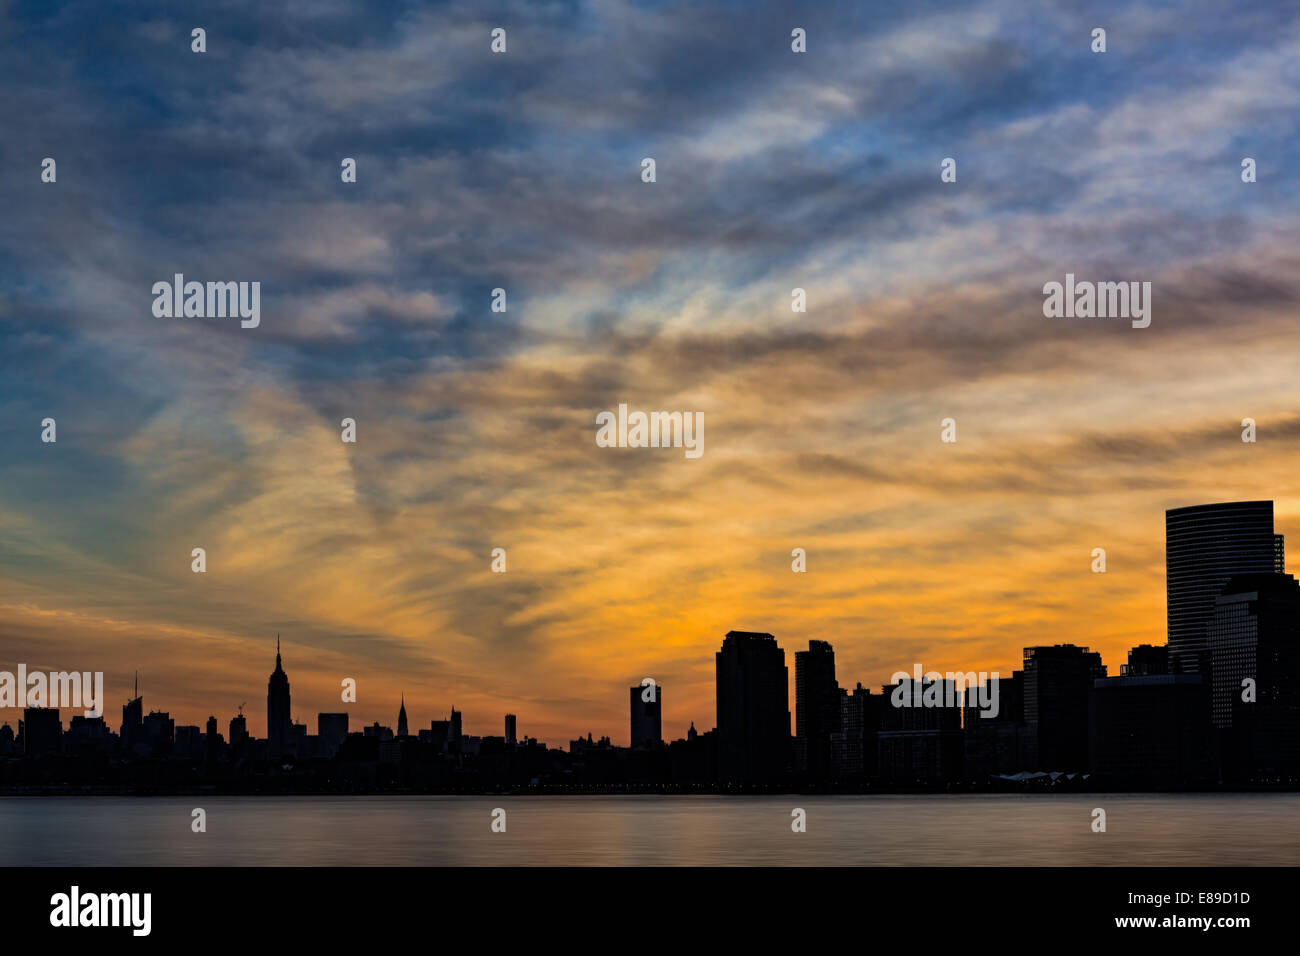 La città di New York skyline silhouette si risveglia in una bellissima alba con una spettacolare sky come sfondo. Foto Stock